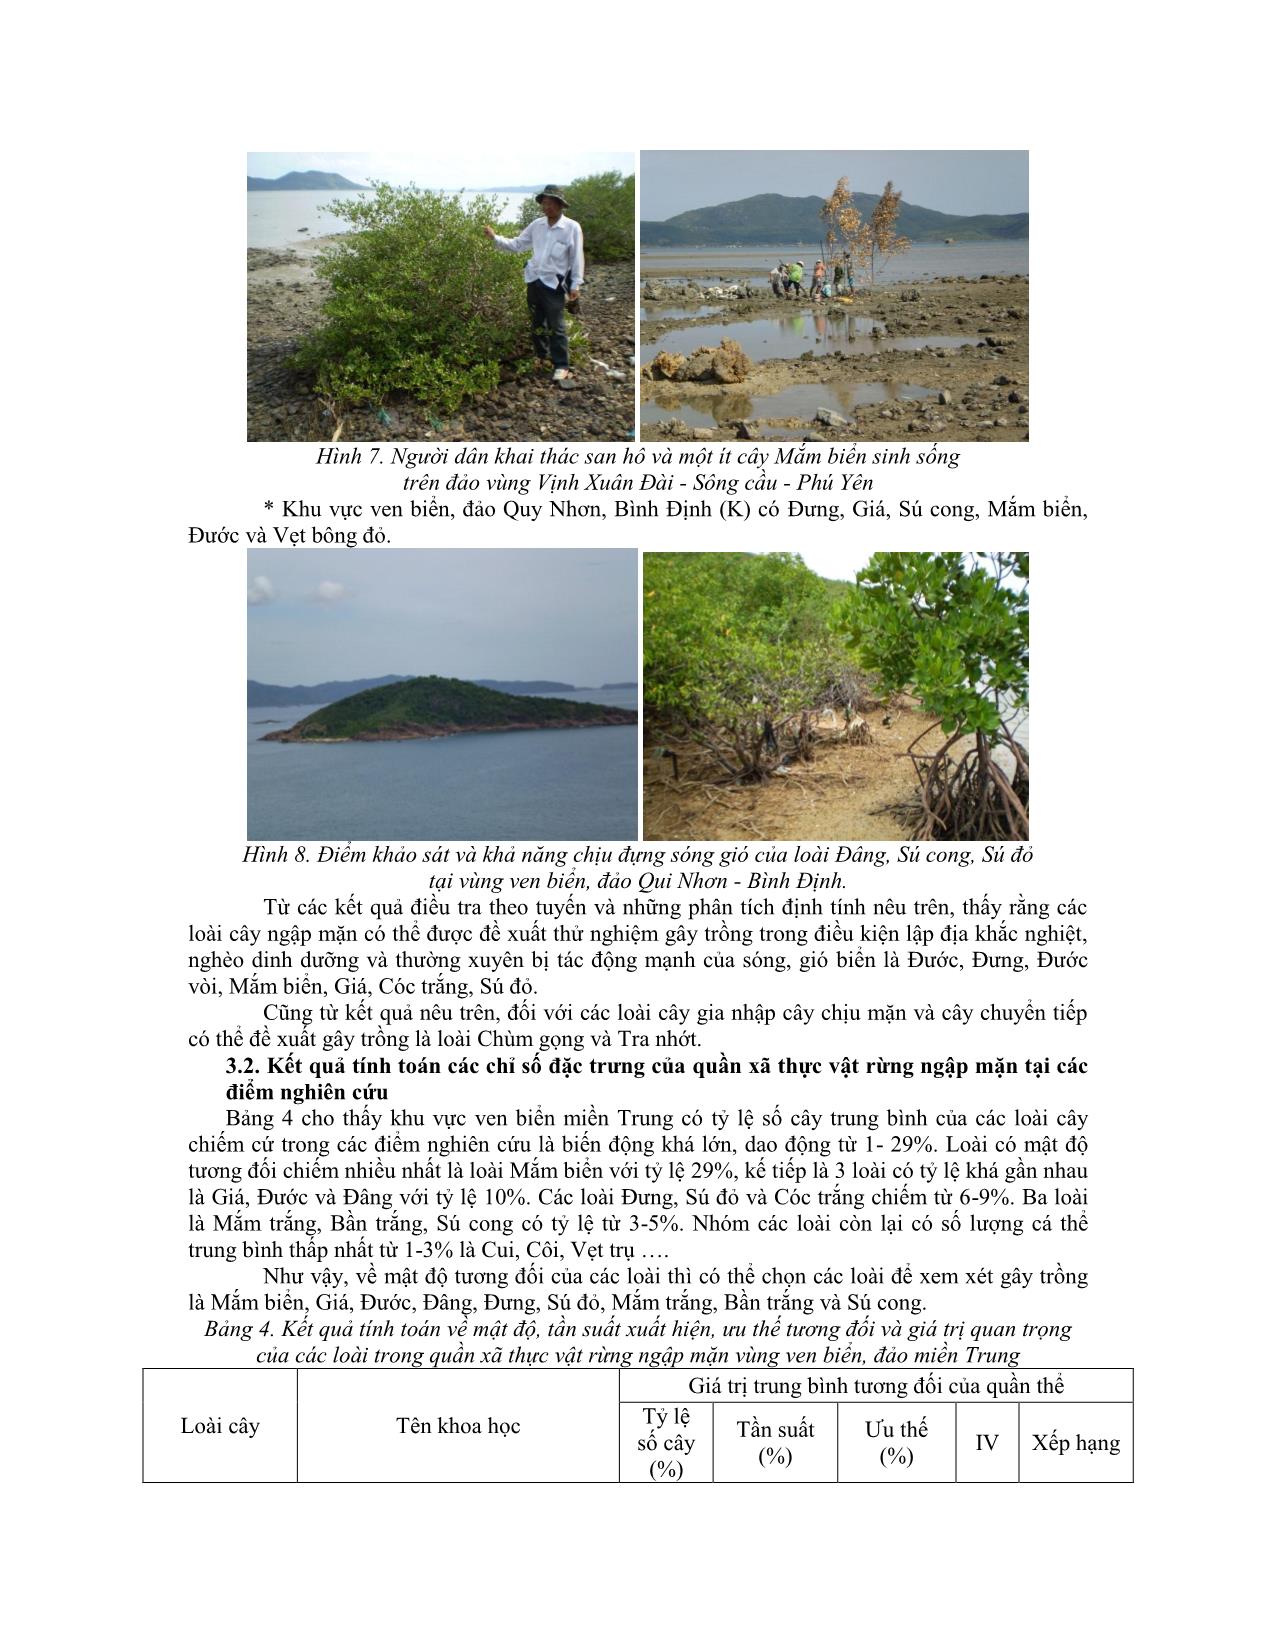 Nghiên cứu thành phần loài và phân bố cây ngập mặn làm cơ sở chọn loài cây trồng trên nền san hô ngập nước ven biển, đảo các tỉnh duyên hải Nam Trung Bộ trang 8